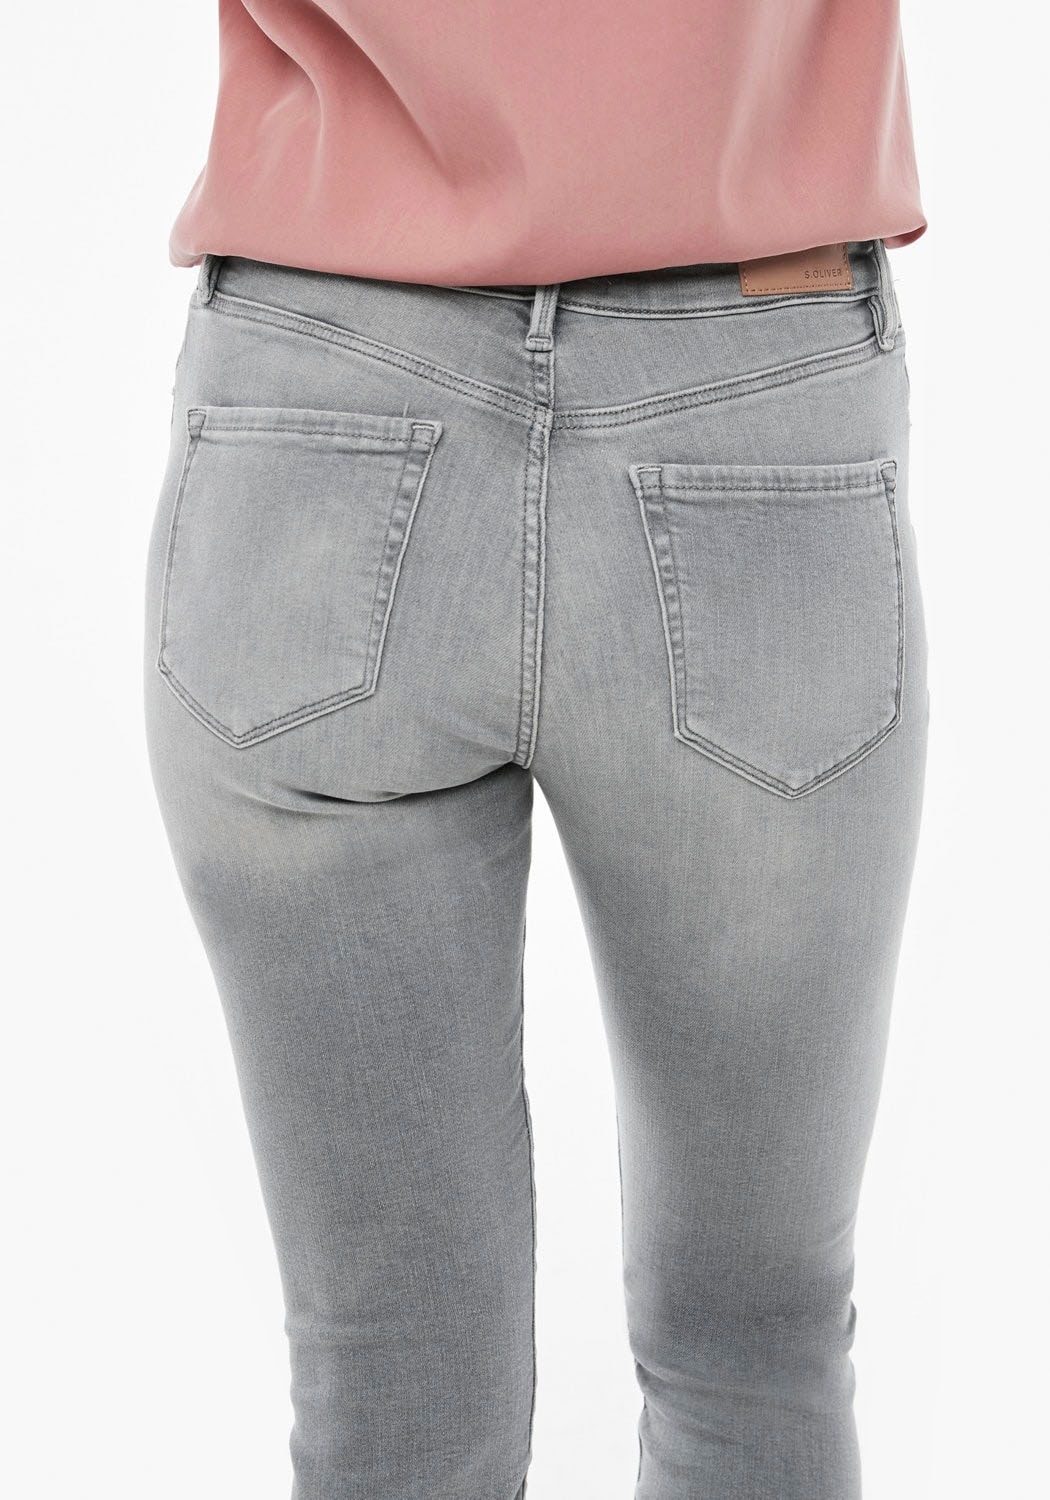 bei in unterschiedlichen Waschungen coolen, s.Oliver Skinny-fit-Jeans, OTTOversand